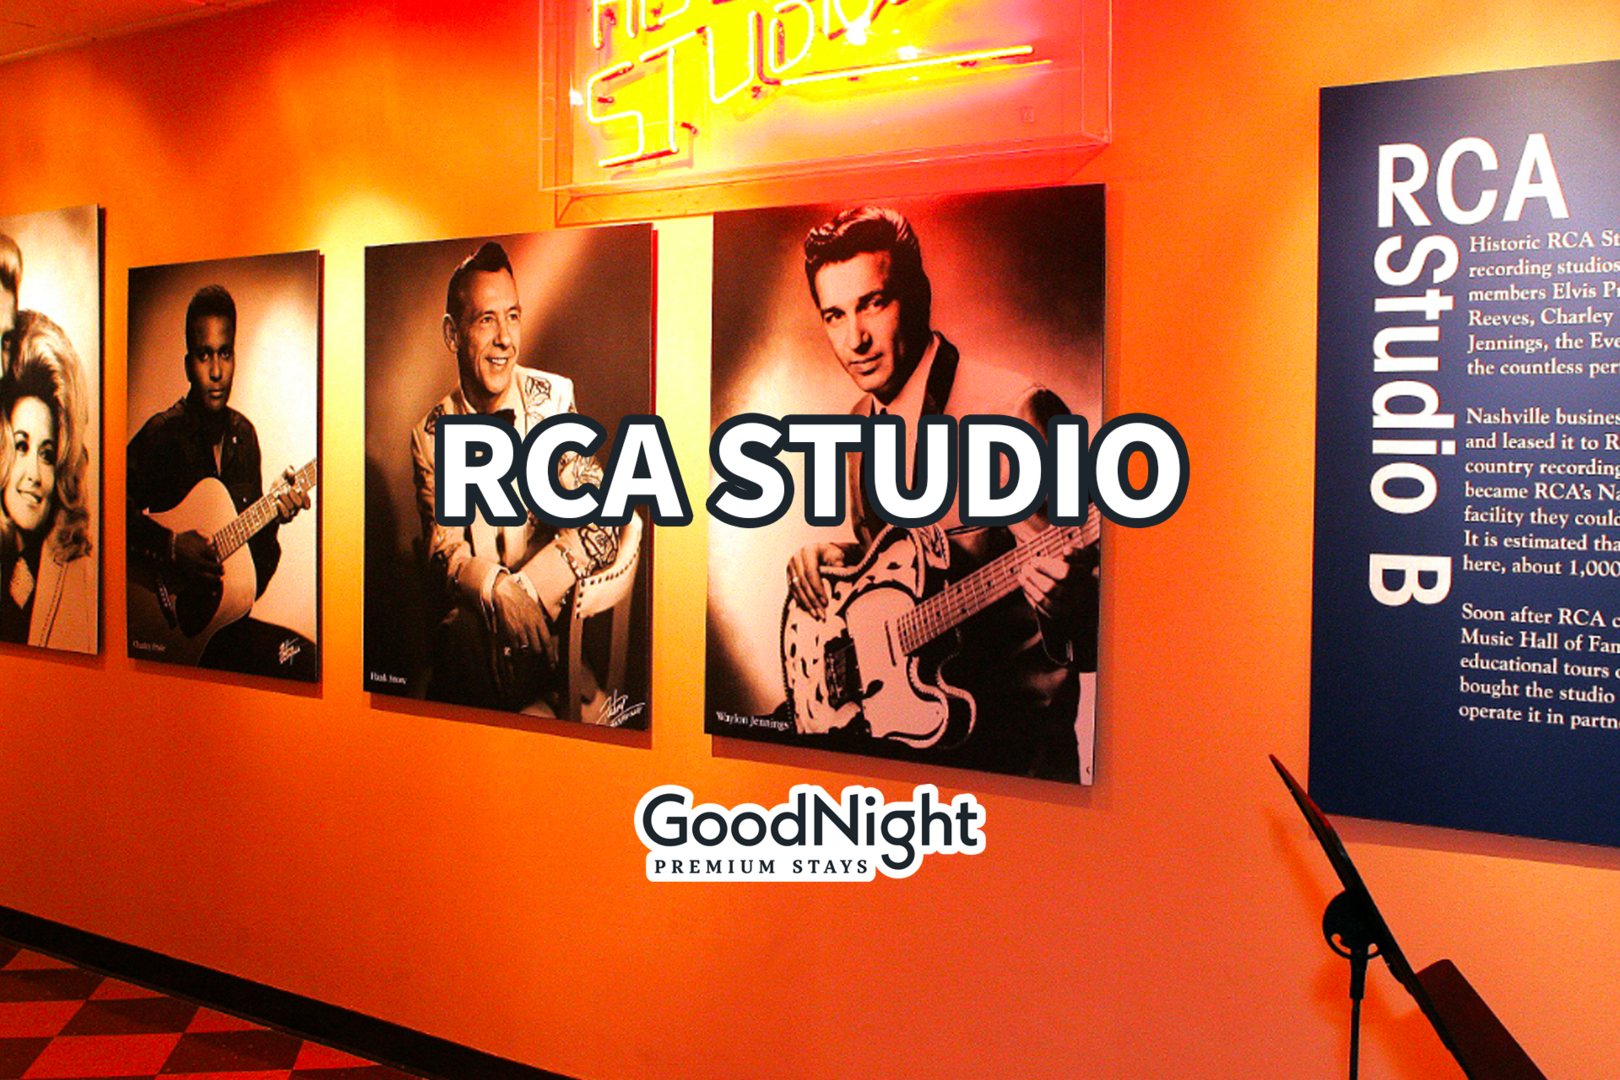 3 mins: RCA Studios